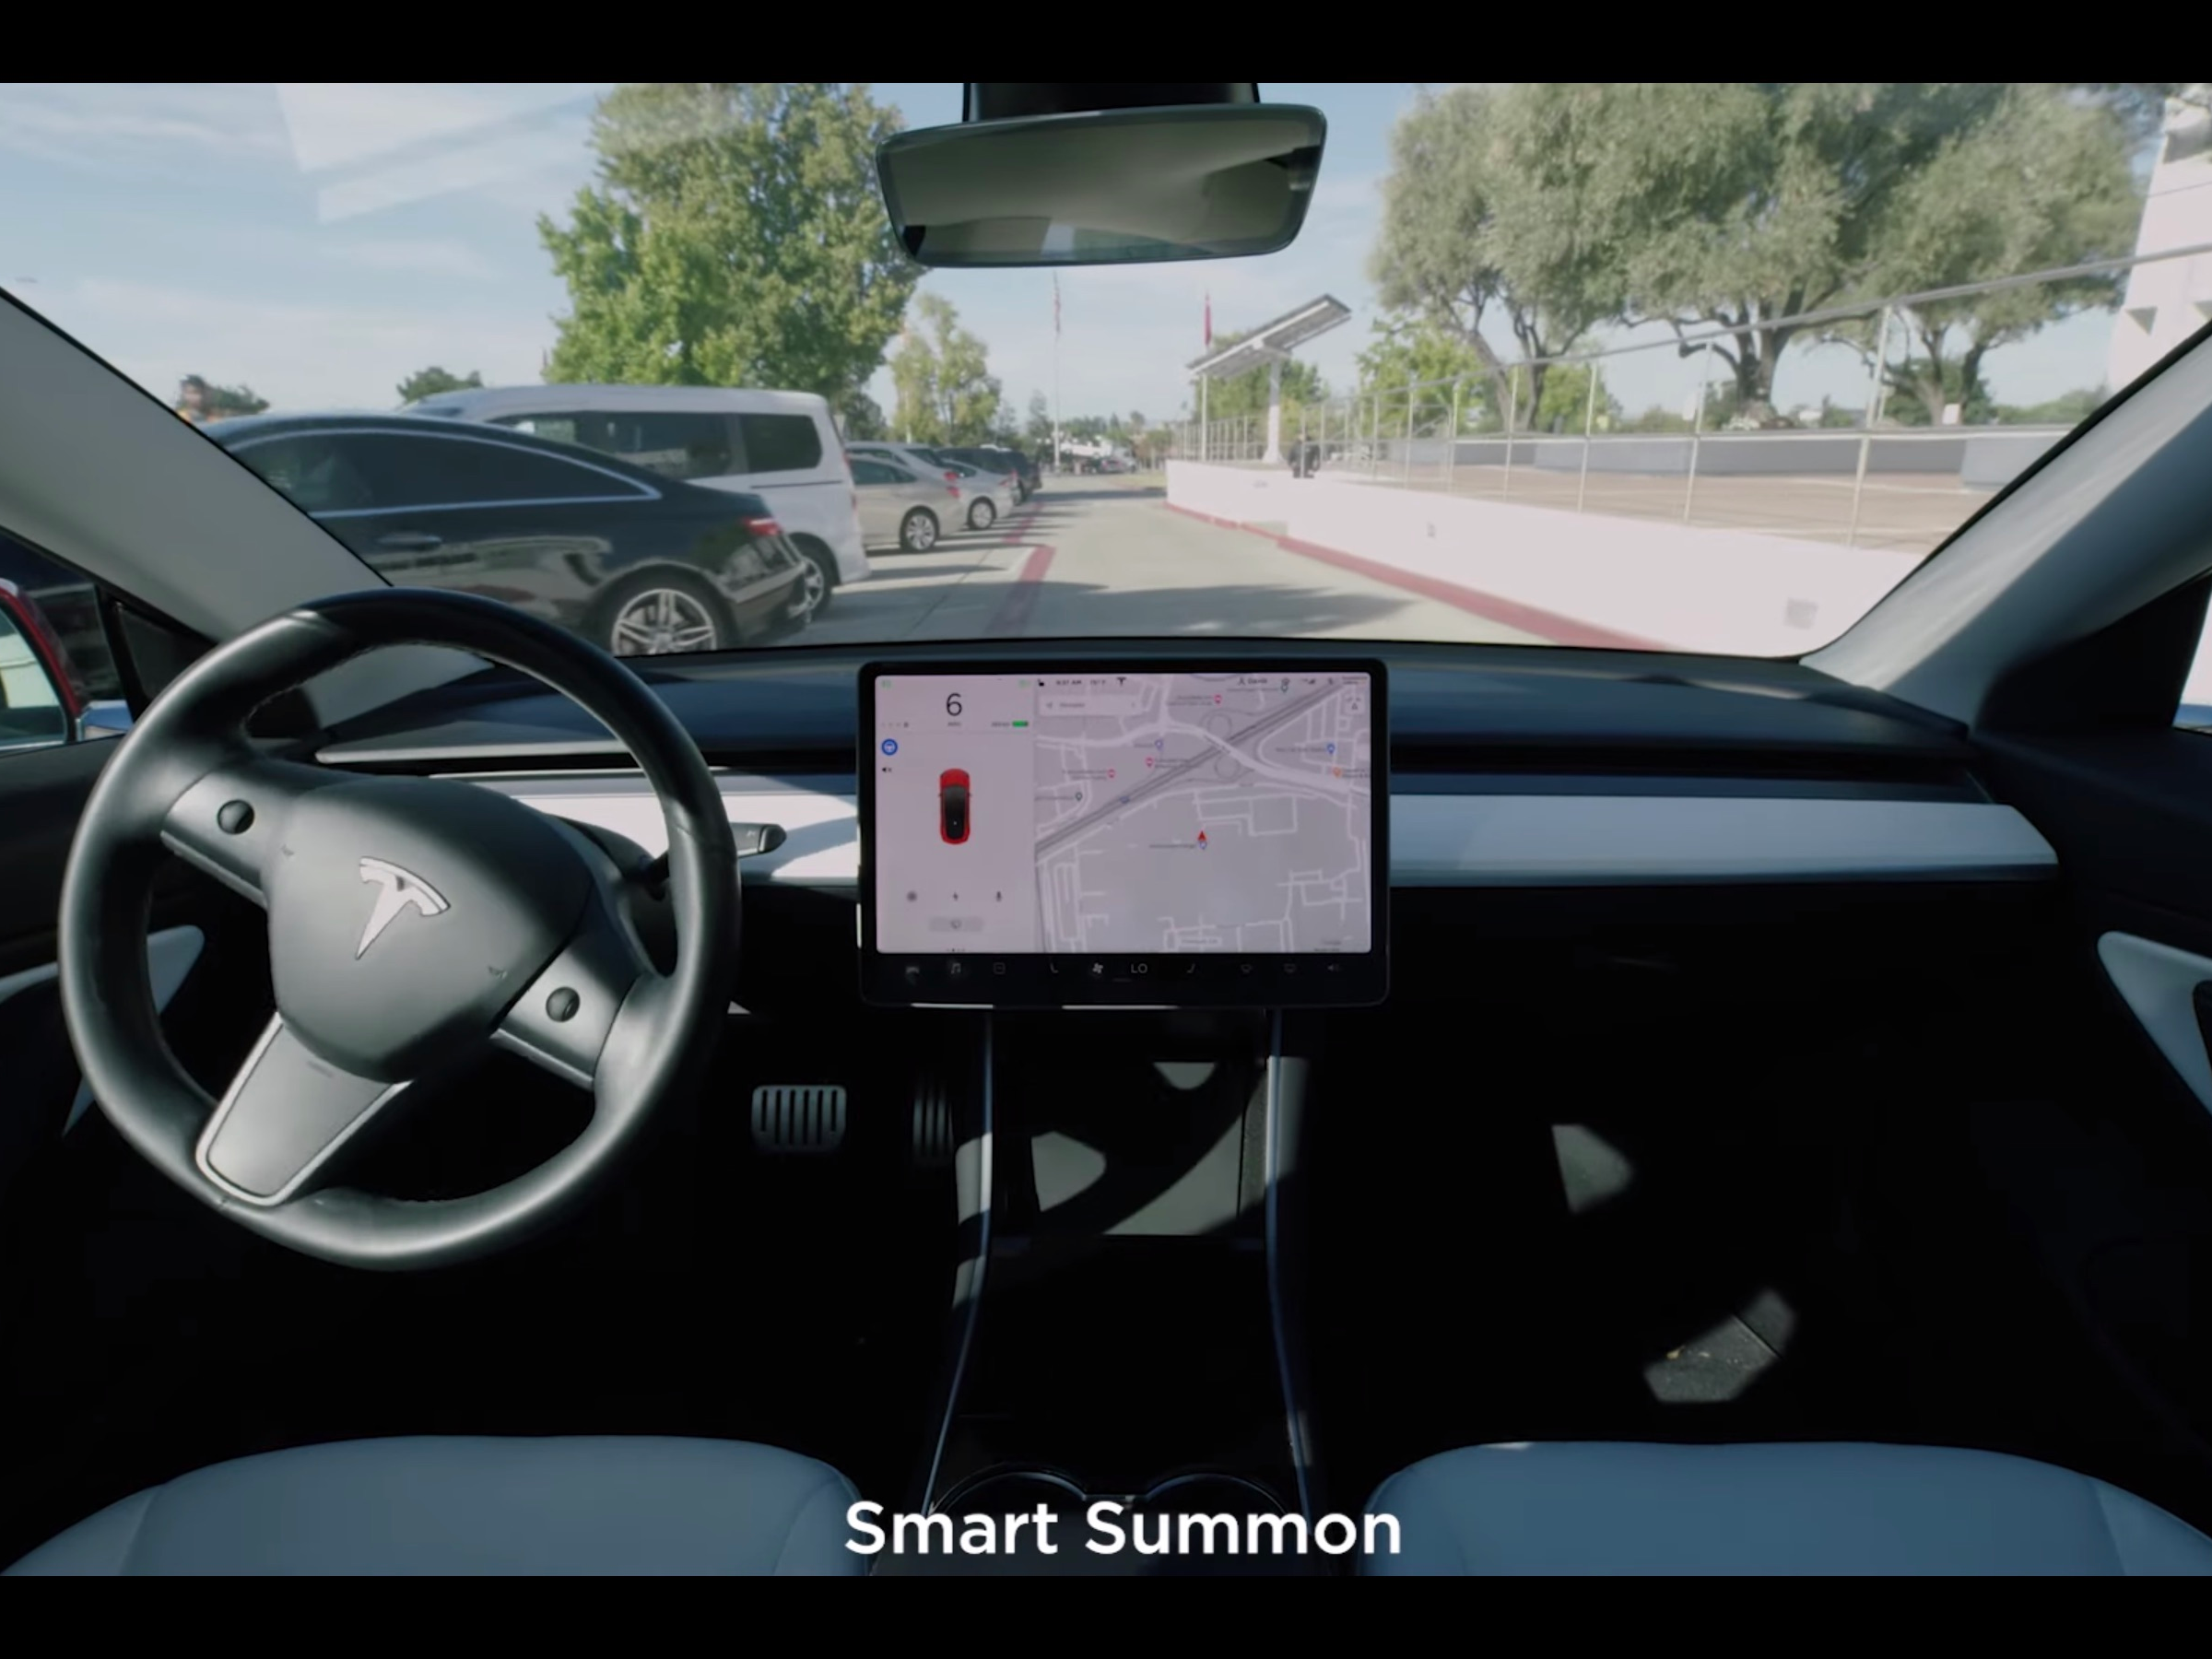 Met 'smart summon' kunnen Tesla's zelfstandig rijden over parkeerplaatsen.